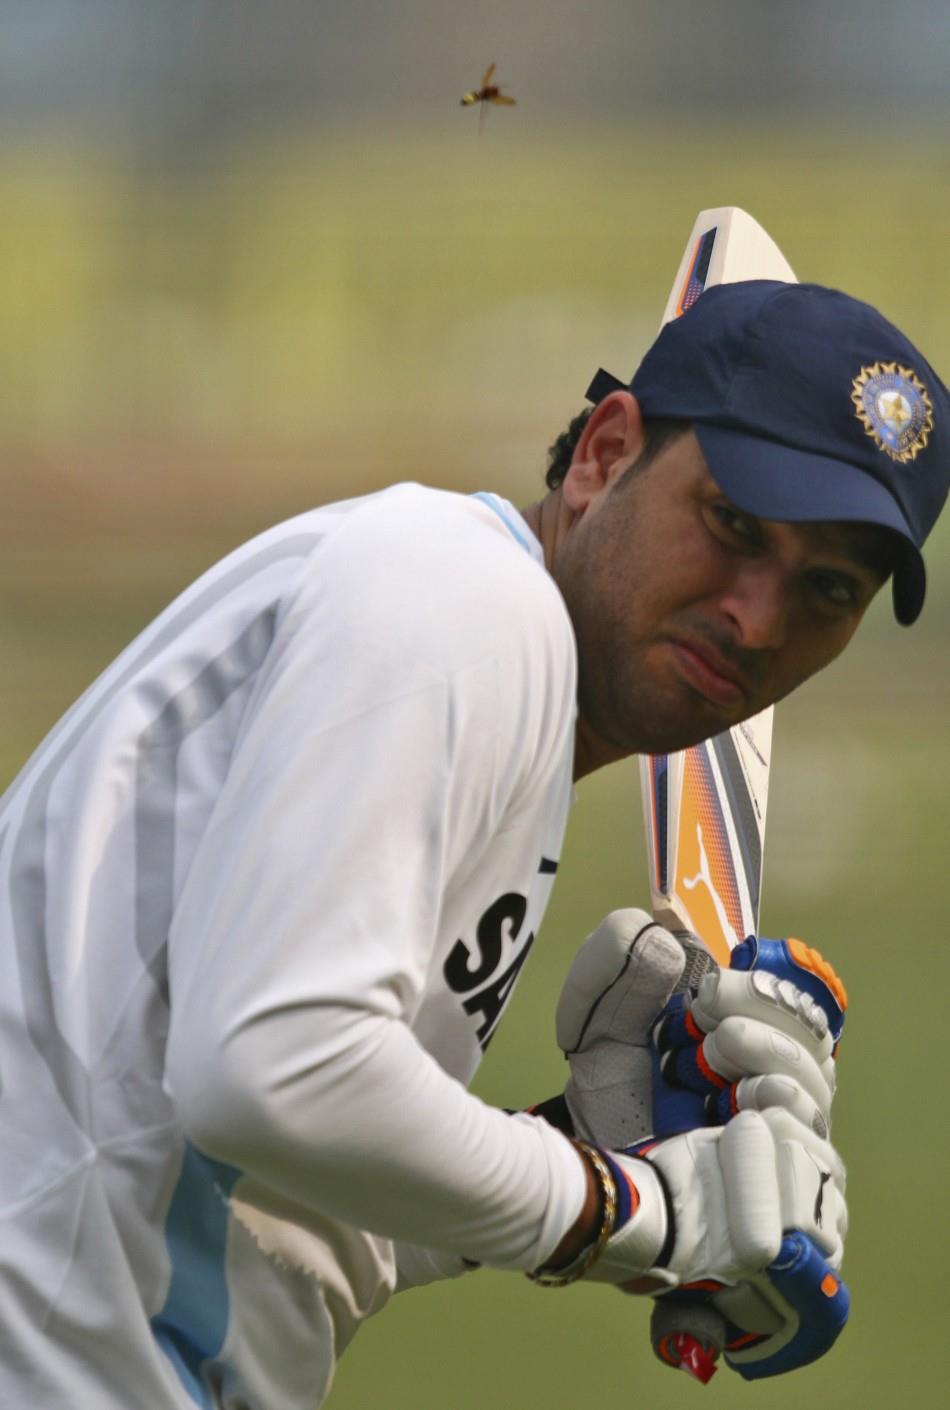 प्रथम श्रेणी मैचों में अच्छे प्रदर्शन के वजह से युवराज सिंह का अंडर-19 वर्ल्ड कप में चयन हुआ। भारत इस टूर्नामेंट में शानदार प्रदर्शन करते हुए चैंपियन बना था और युवराज सिंह मैन ऑफ द सीरीज बने थे।  